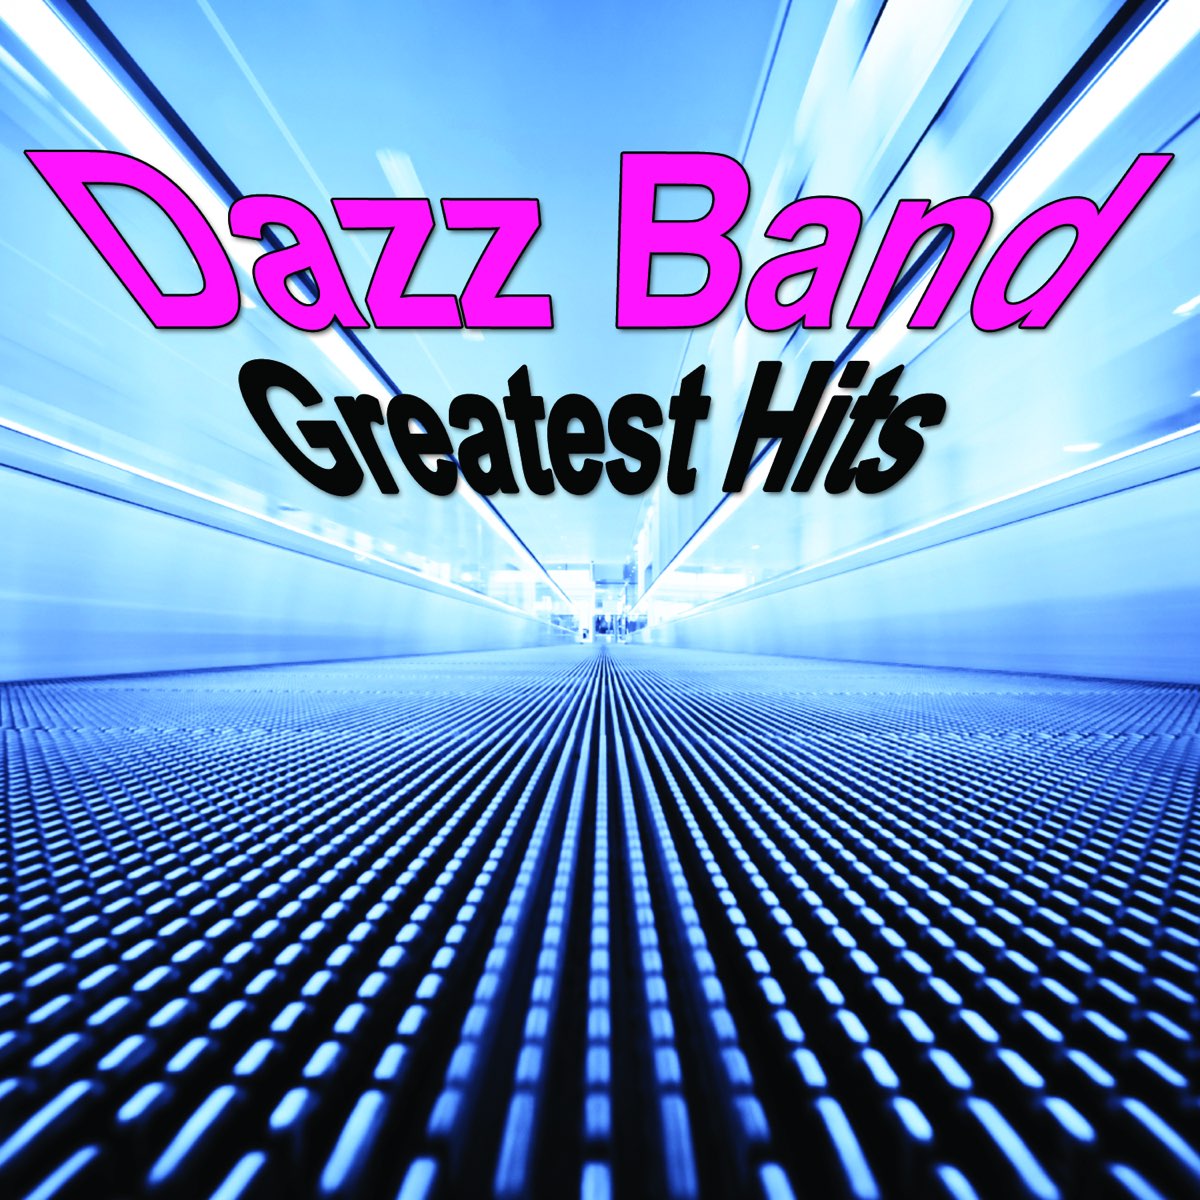 ‎Greatest Hits av Dazz Band på Apple Music